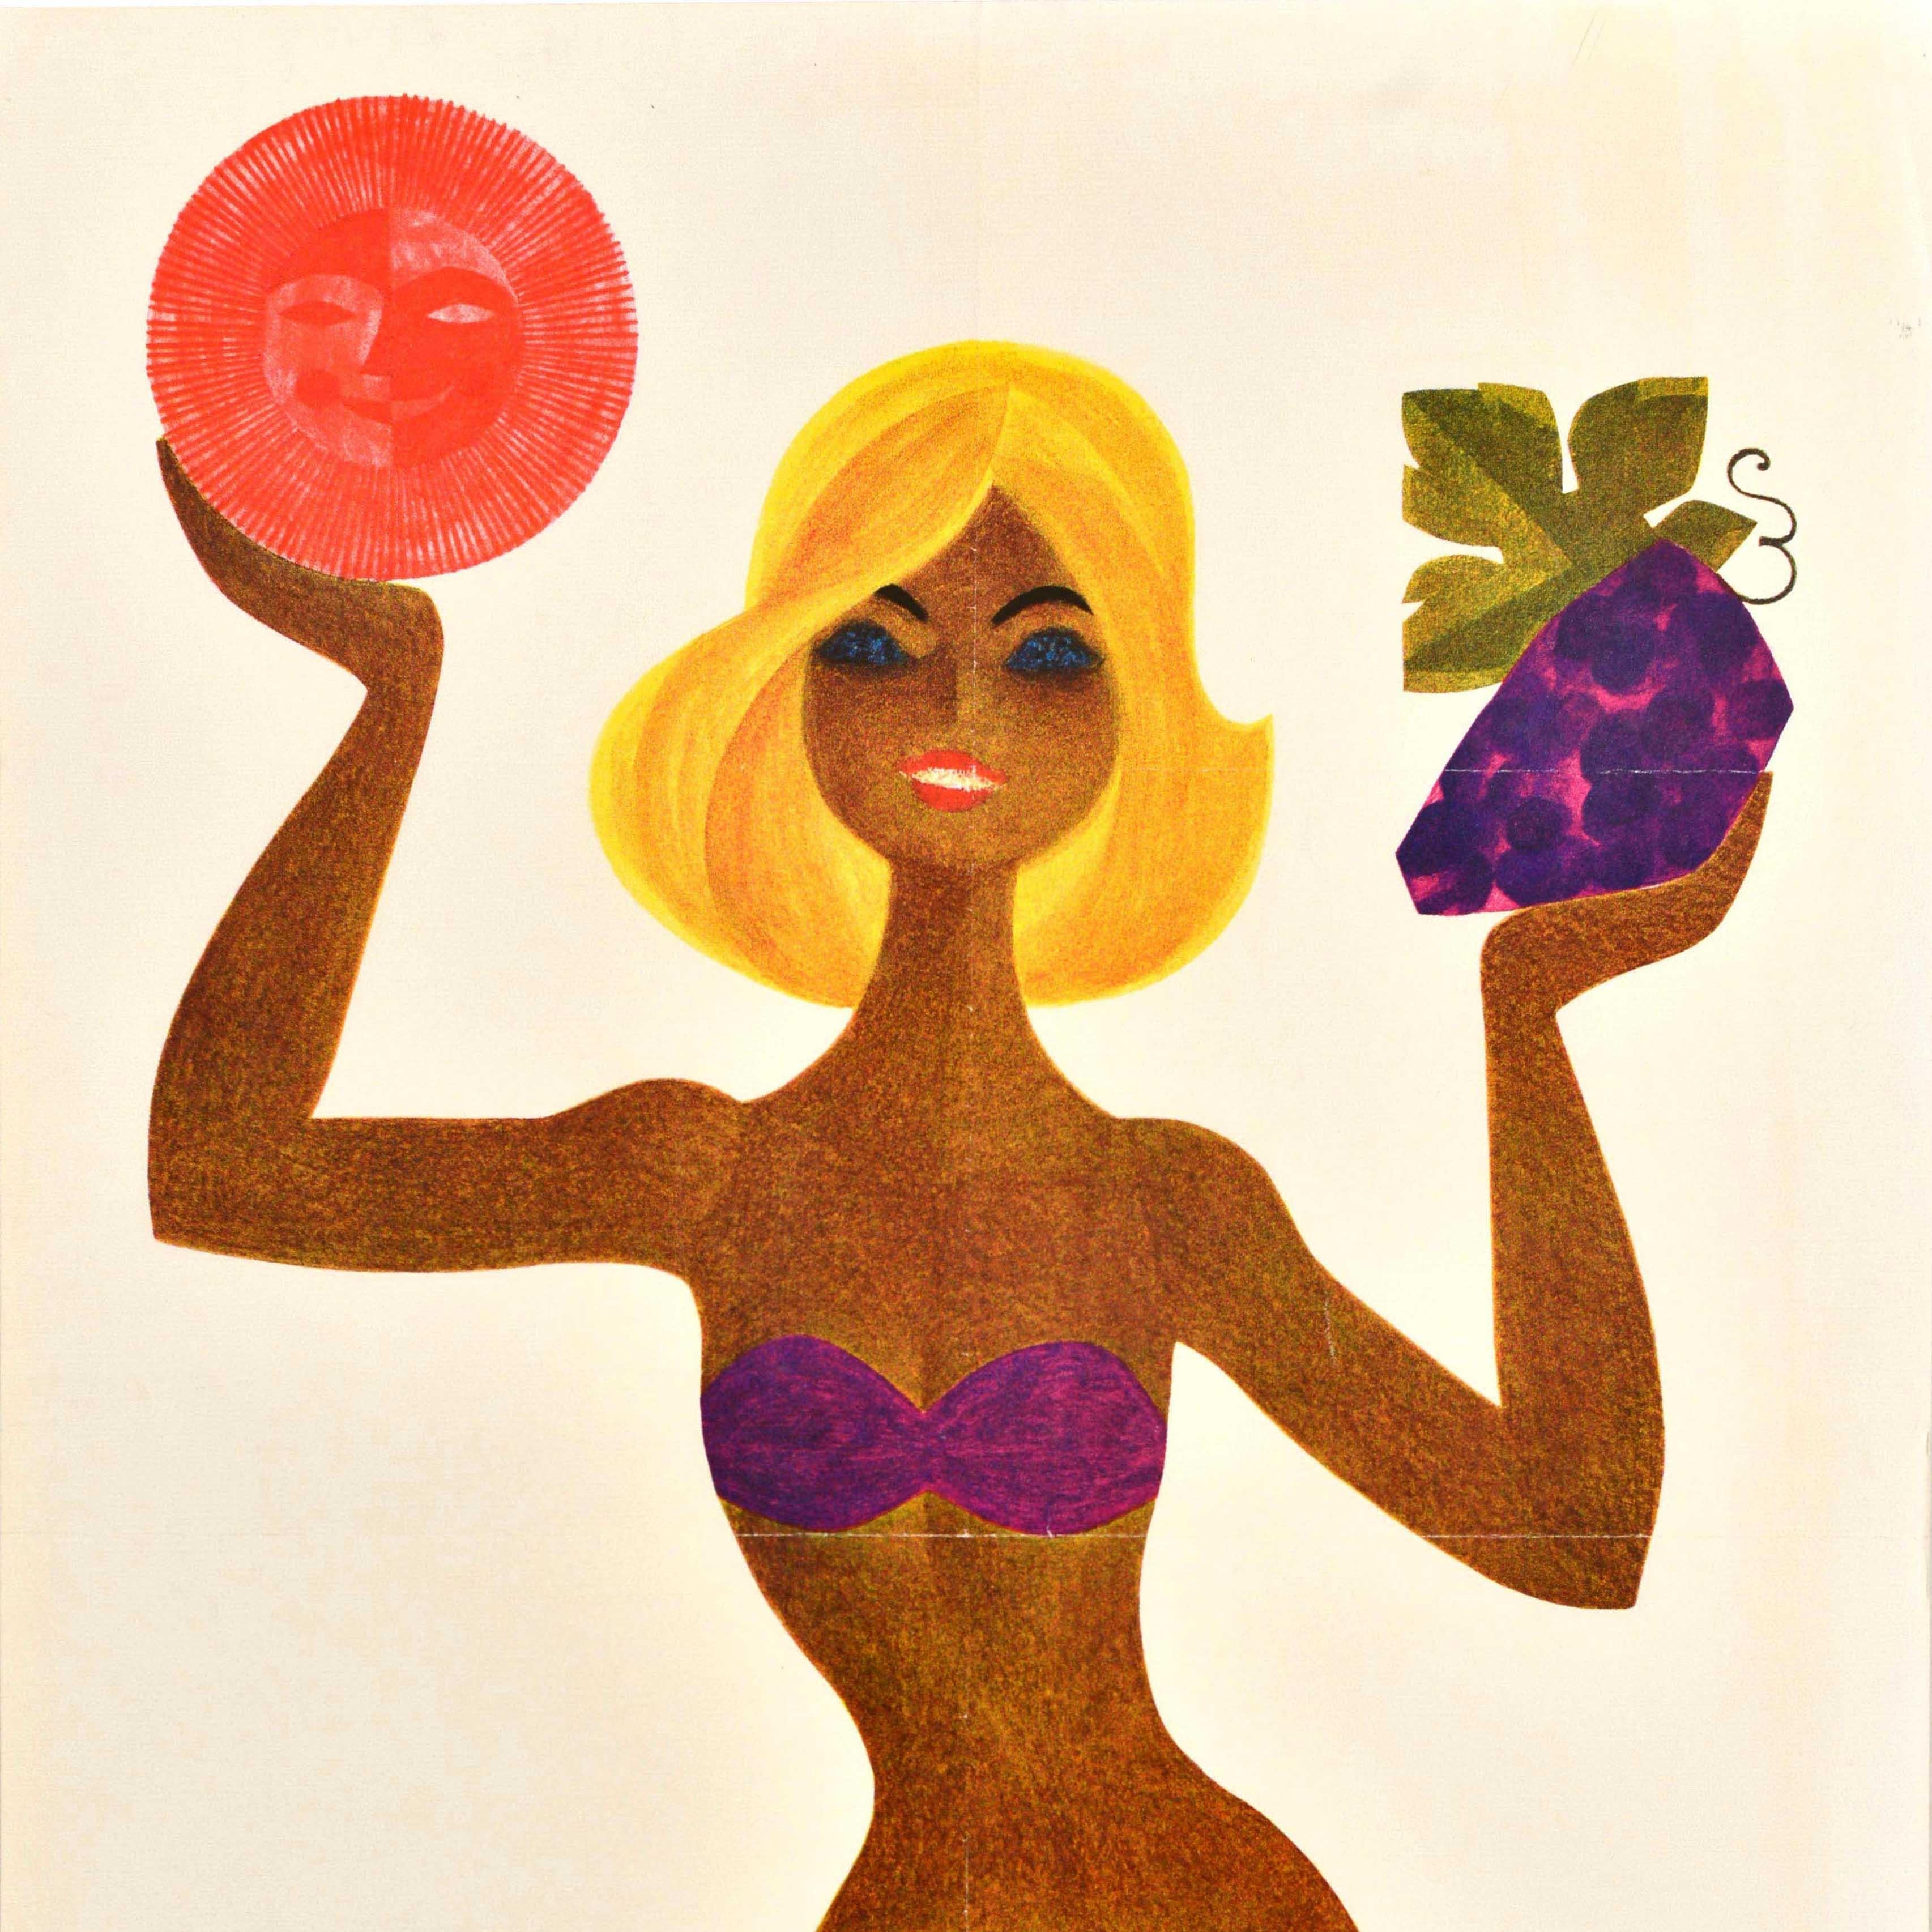 Affiche de voyage originale publiée par l'agence de voyage soviétique Intourist représentant une femme bronzée en bikini tenant un soleil souriant dans une main et une grappe de raisin dans l'autre, avec au premier plan un poisson nageant dans une